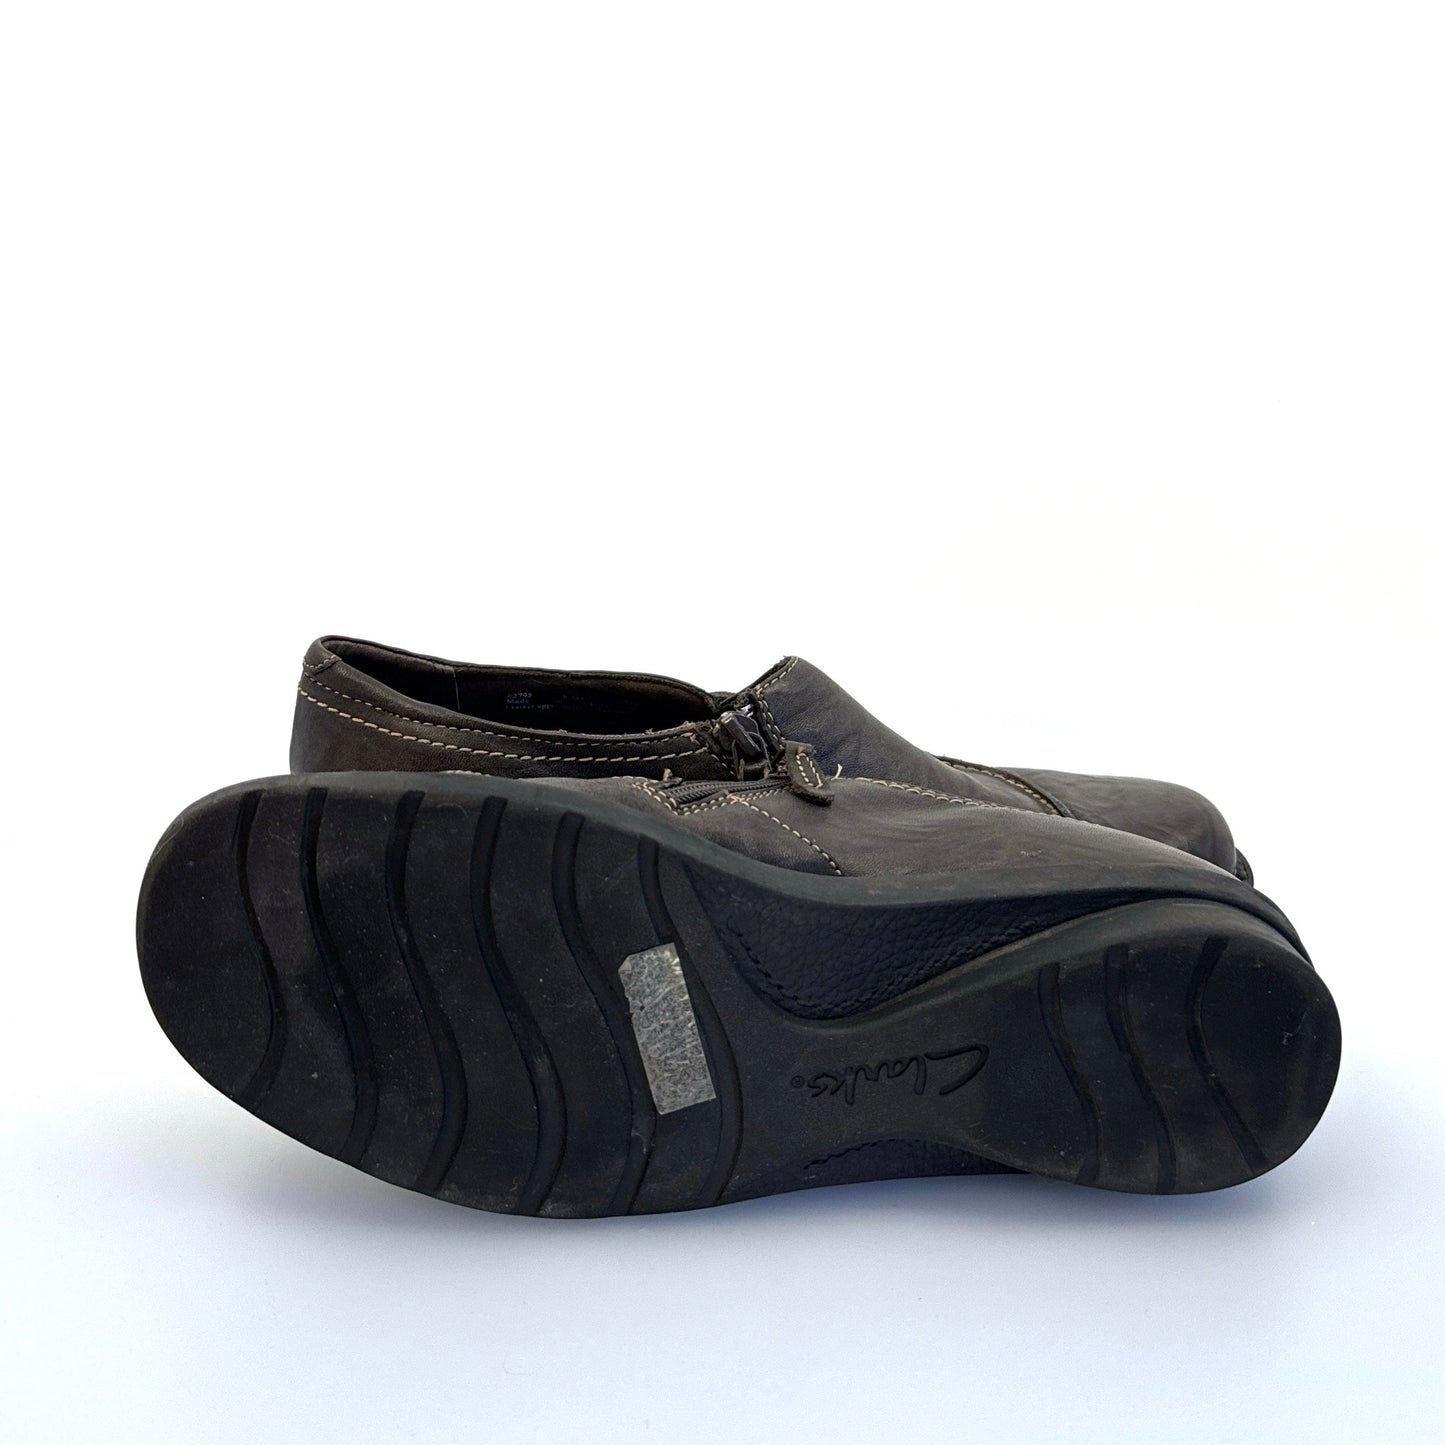 Clarks Bendables | Women Asymmetric Zipper Leather Shoes | Color: Brown | Size: 8.5M